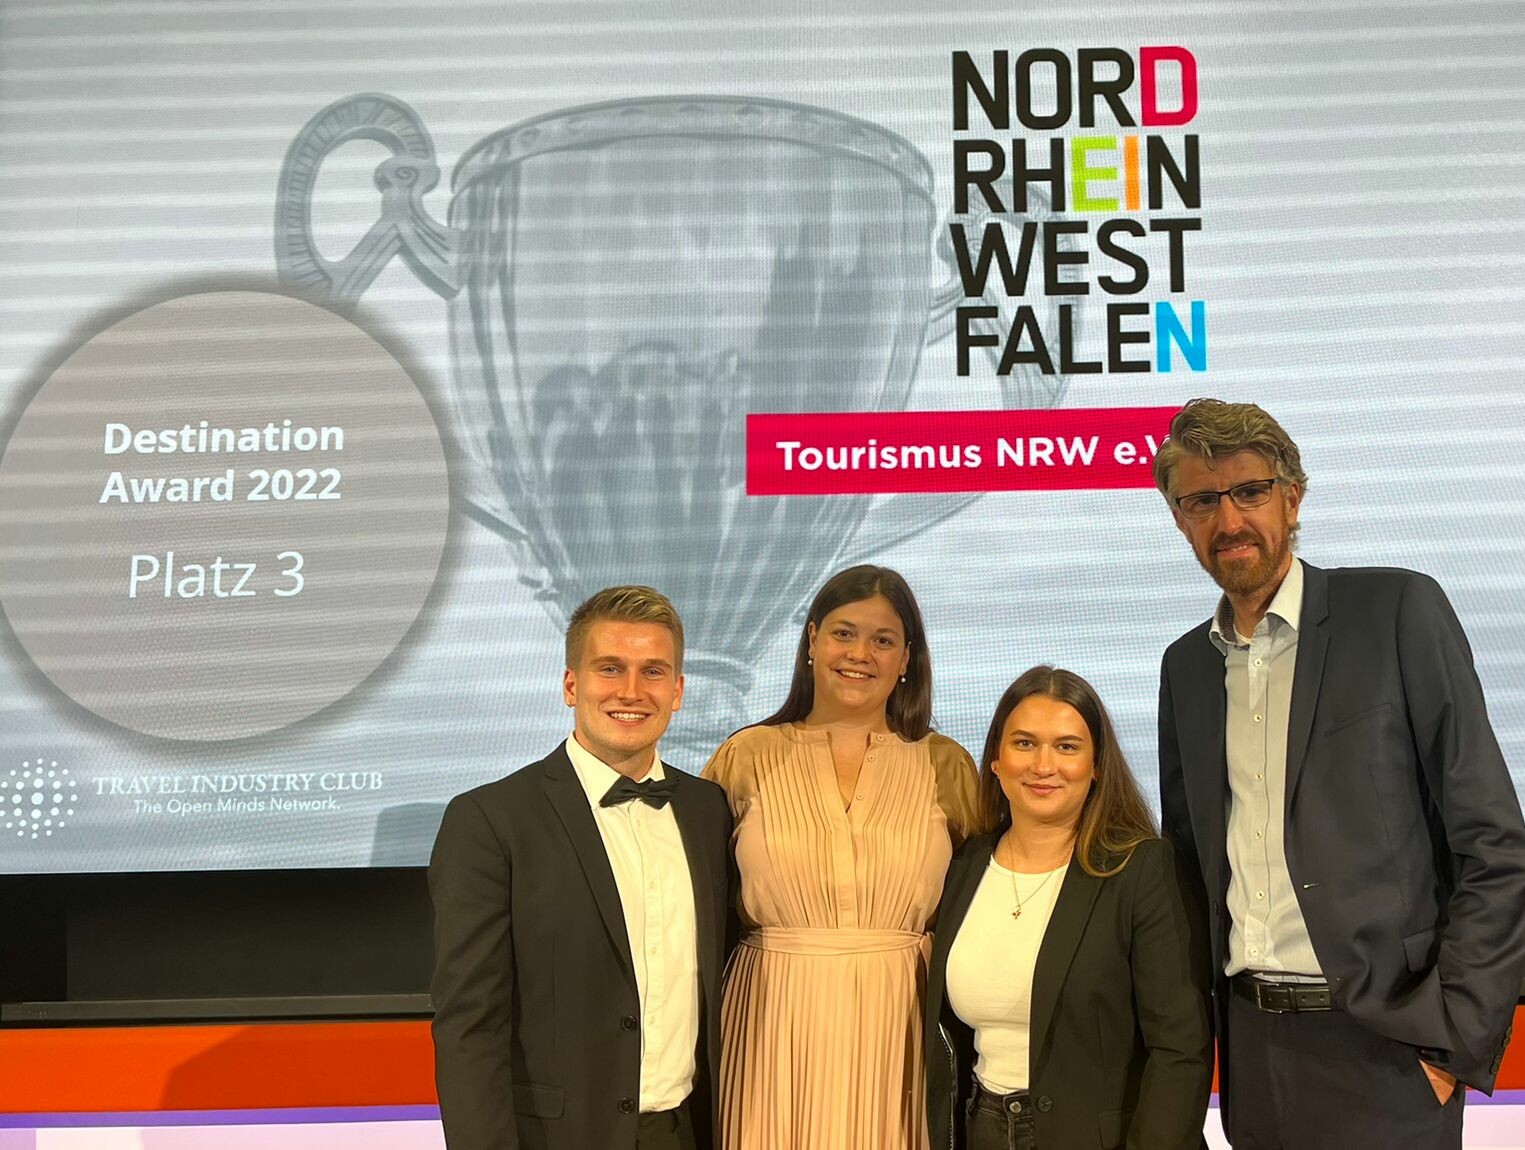 Mitarbeitende des Tourismus NRW vor einem Bildschirm, auf dem steht "Destination Award 2022 - Platz 3"